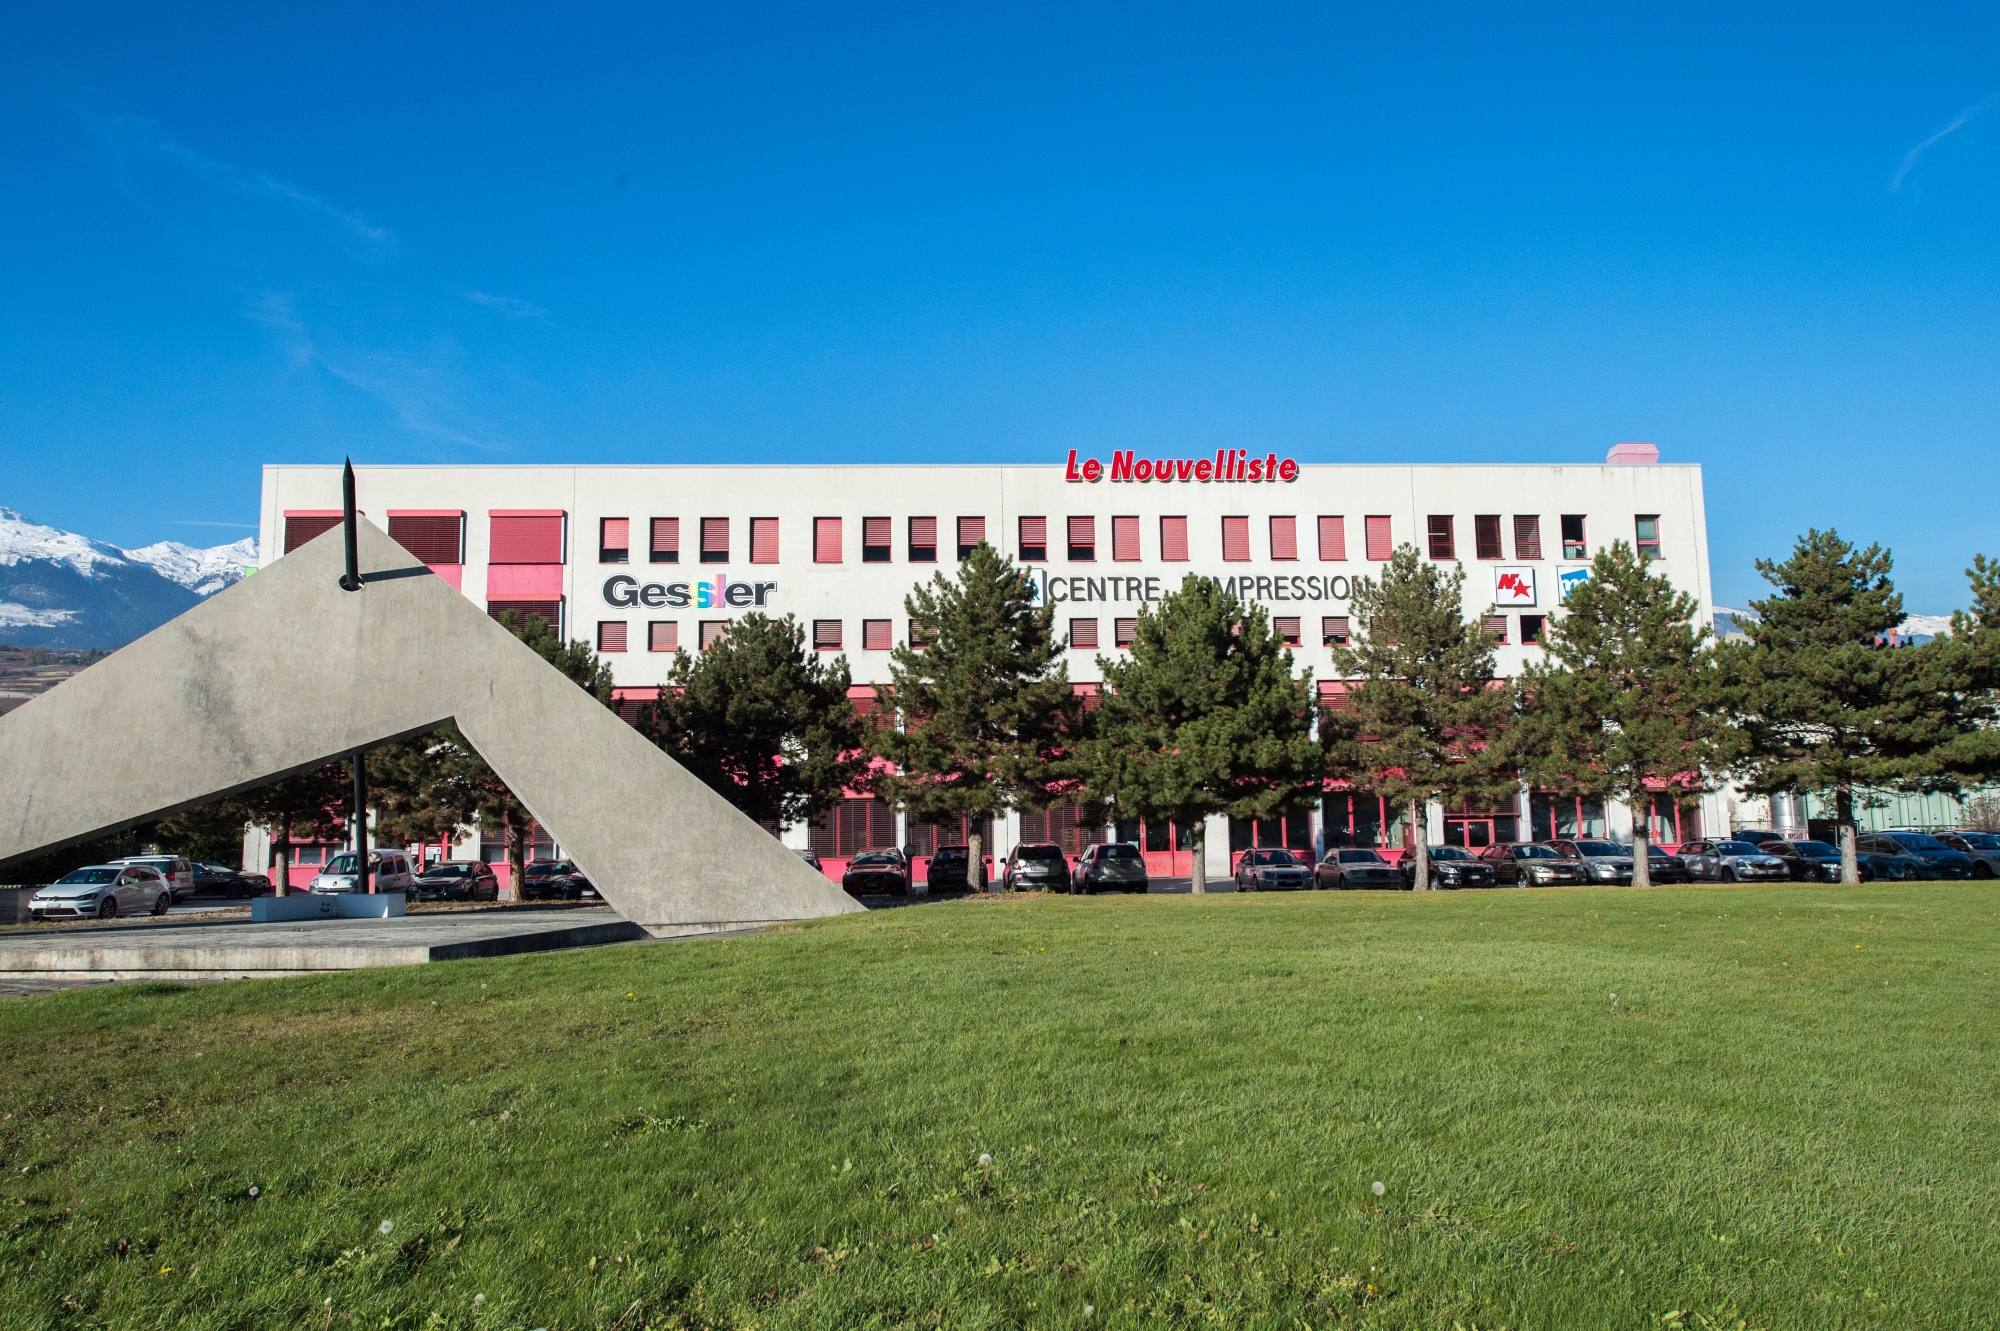 Sion le, 17 nov. 2017 : L'EPFL à acheter le terrain ou est situer le Centre d'impression des Ronquoz (CIR) qui imprime le Le Nouvelliste. ©Sacha Bittel/Le Nouvelliste